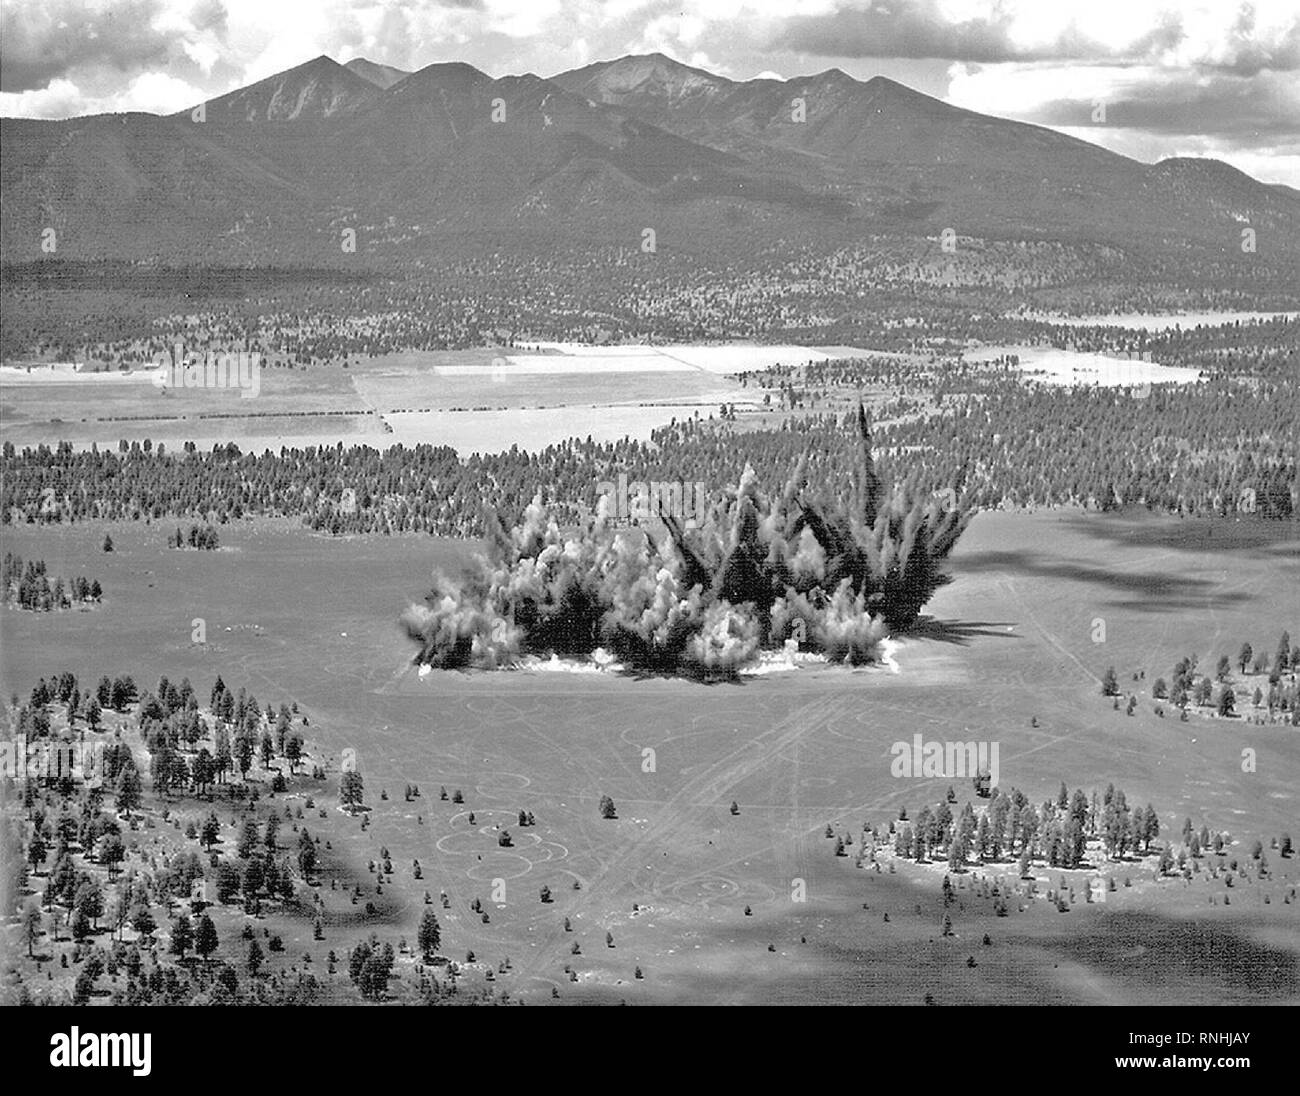 1968 - cratères de dynamitage pour une nouvelle section de l'extérieur, les lacs de parpaing Flagstaff Arizona(Juillet 1968). USGS Astrogeology construit une maquette d'une section de la mer de la tranquillité dans un champ à l'aide de cendre avec une formation et des études de déplacement. Banque D'Images